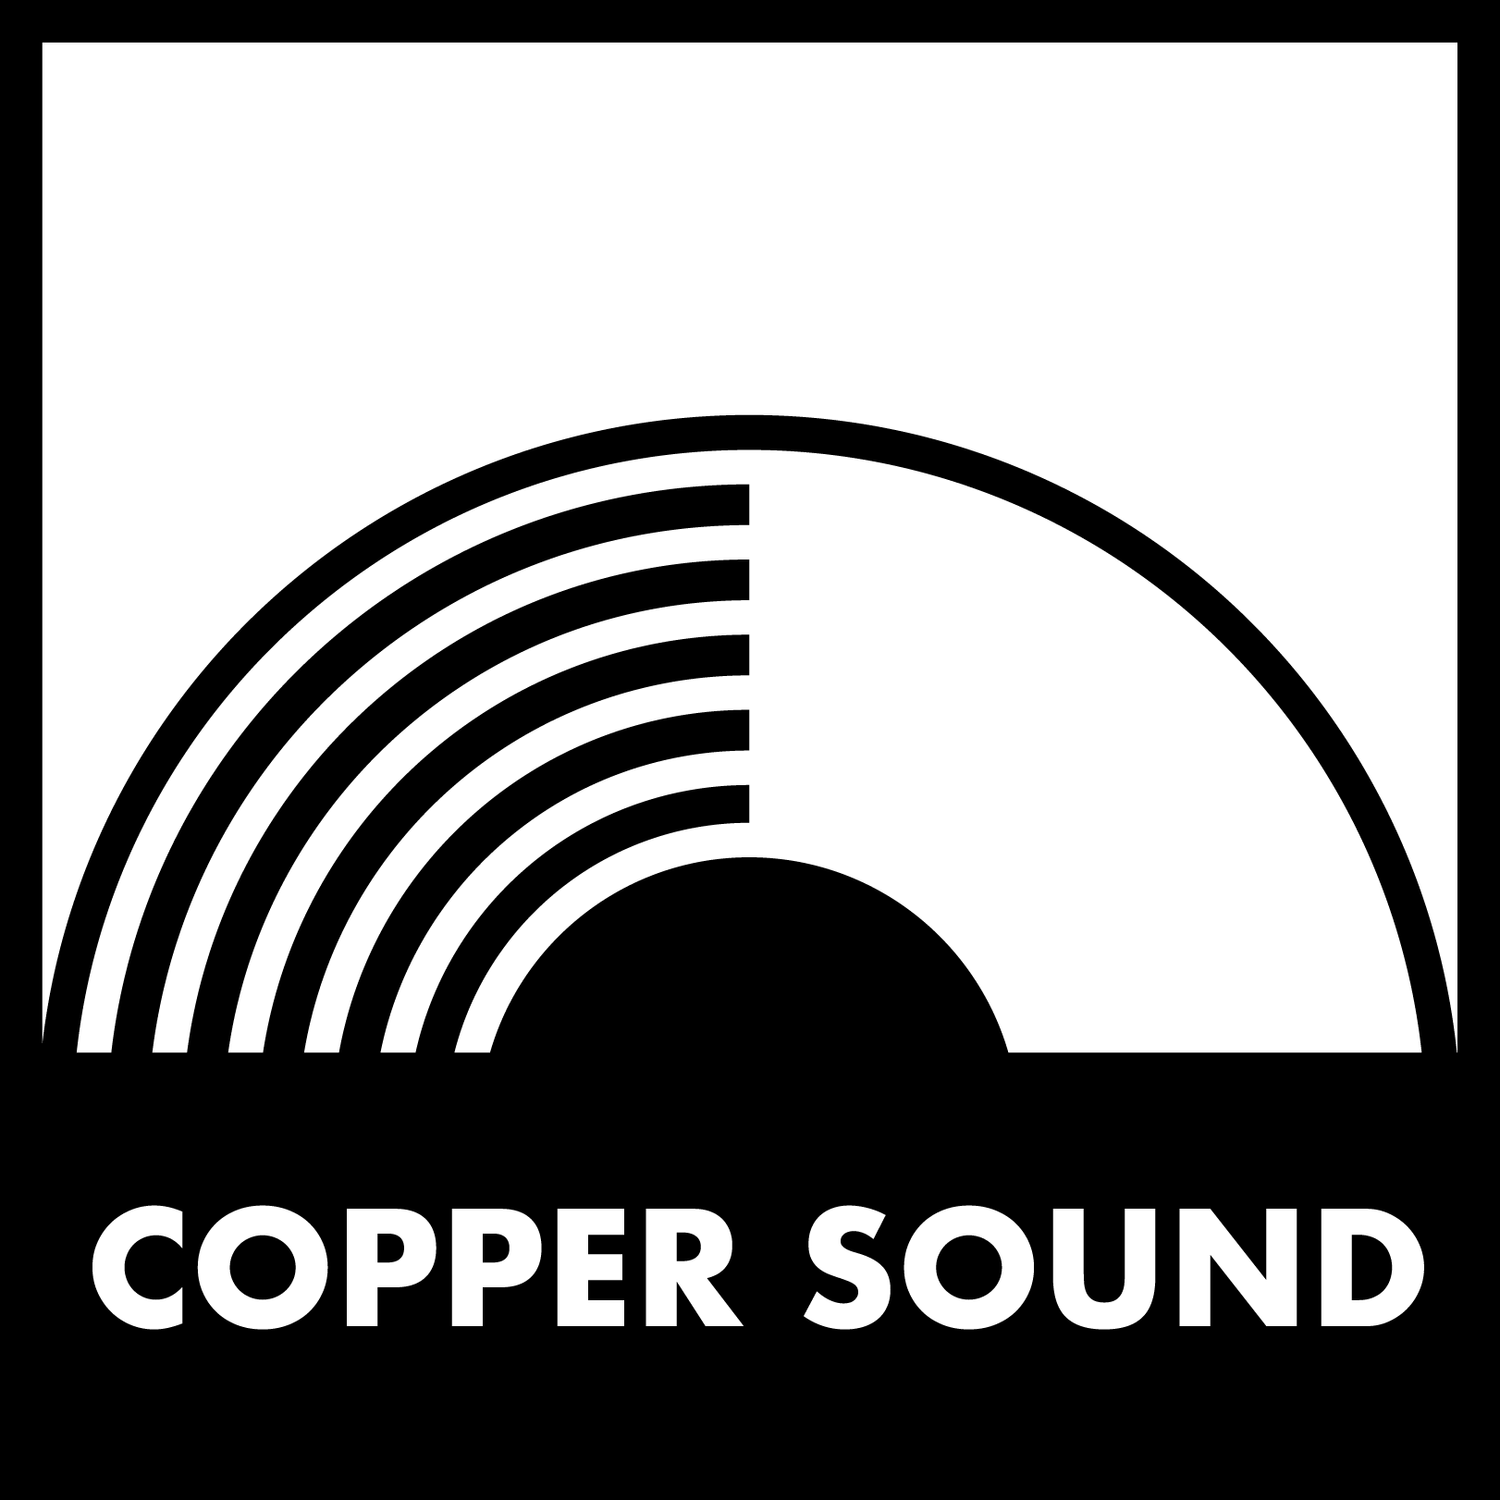 COPPER SOUND